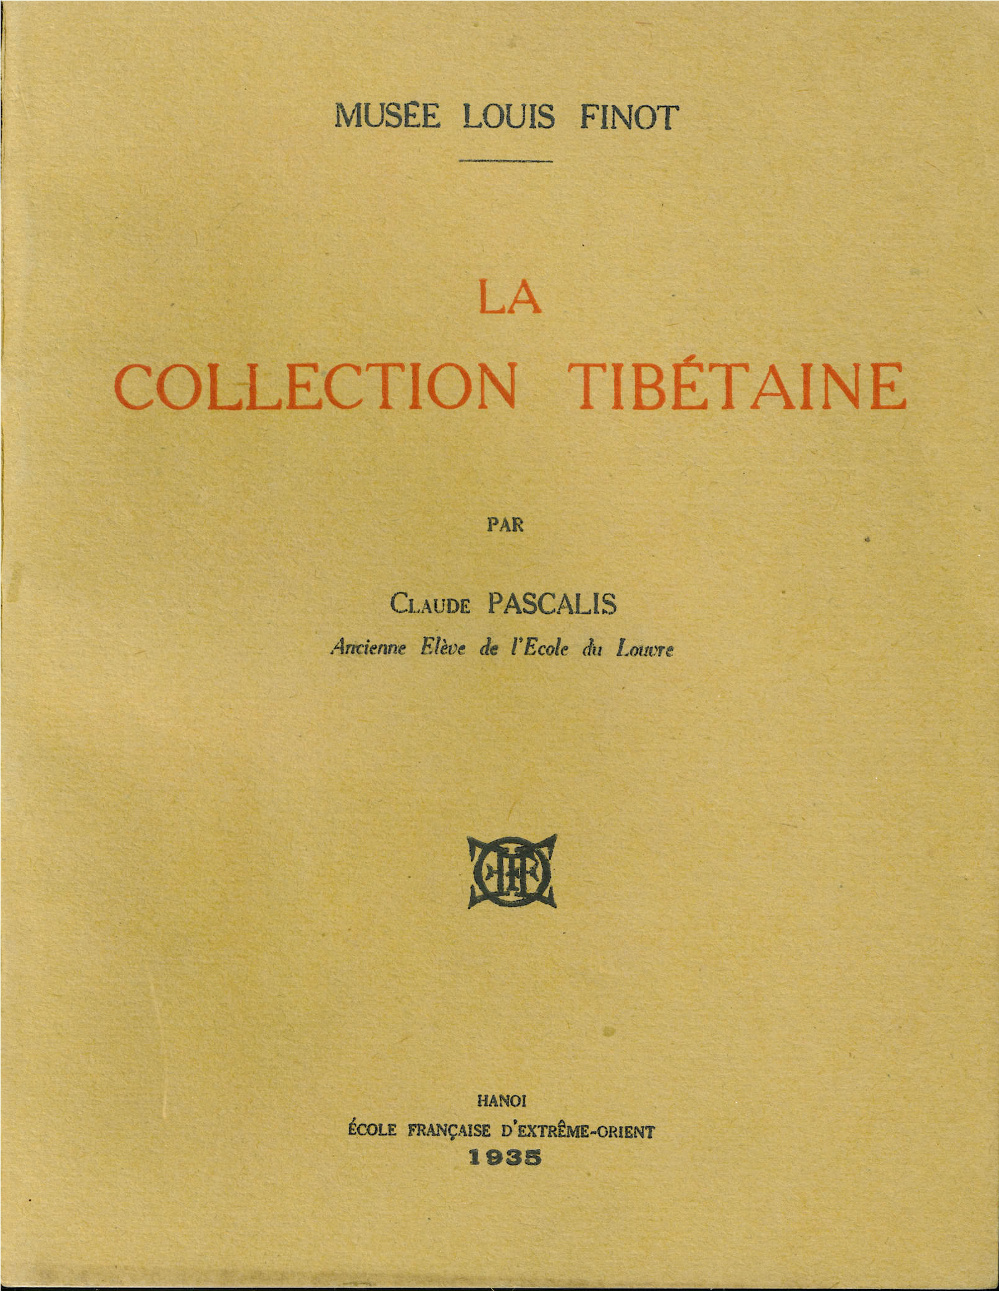 La collection tibétaine